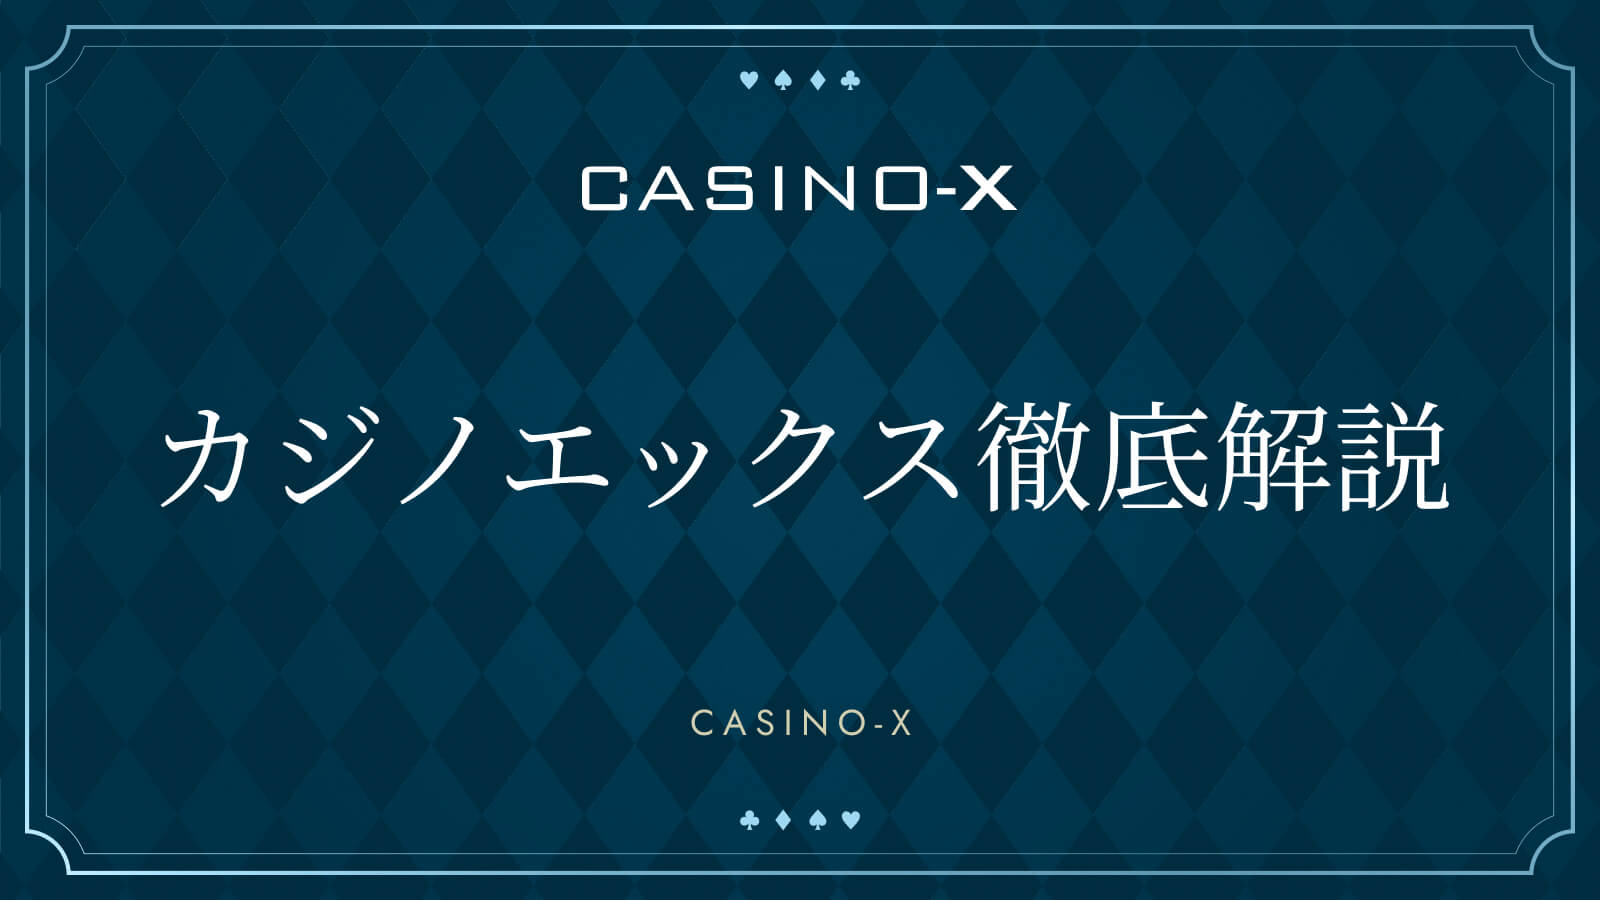 カジノエックス徹底解説 CASINO-X